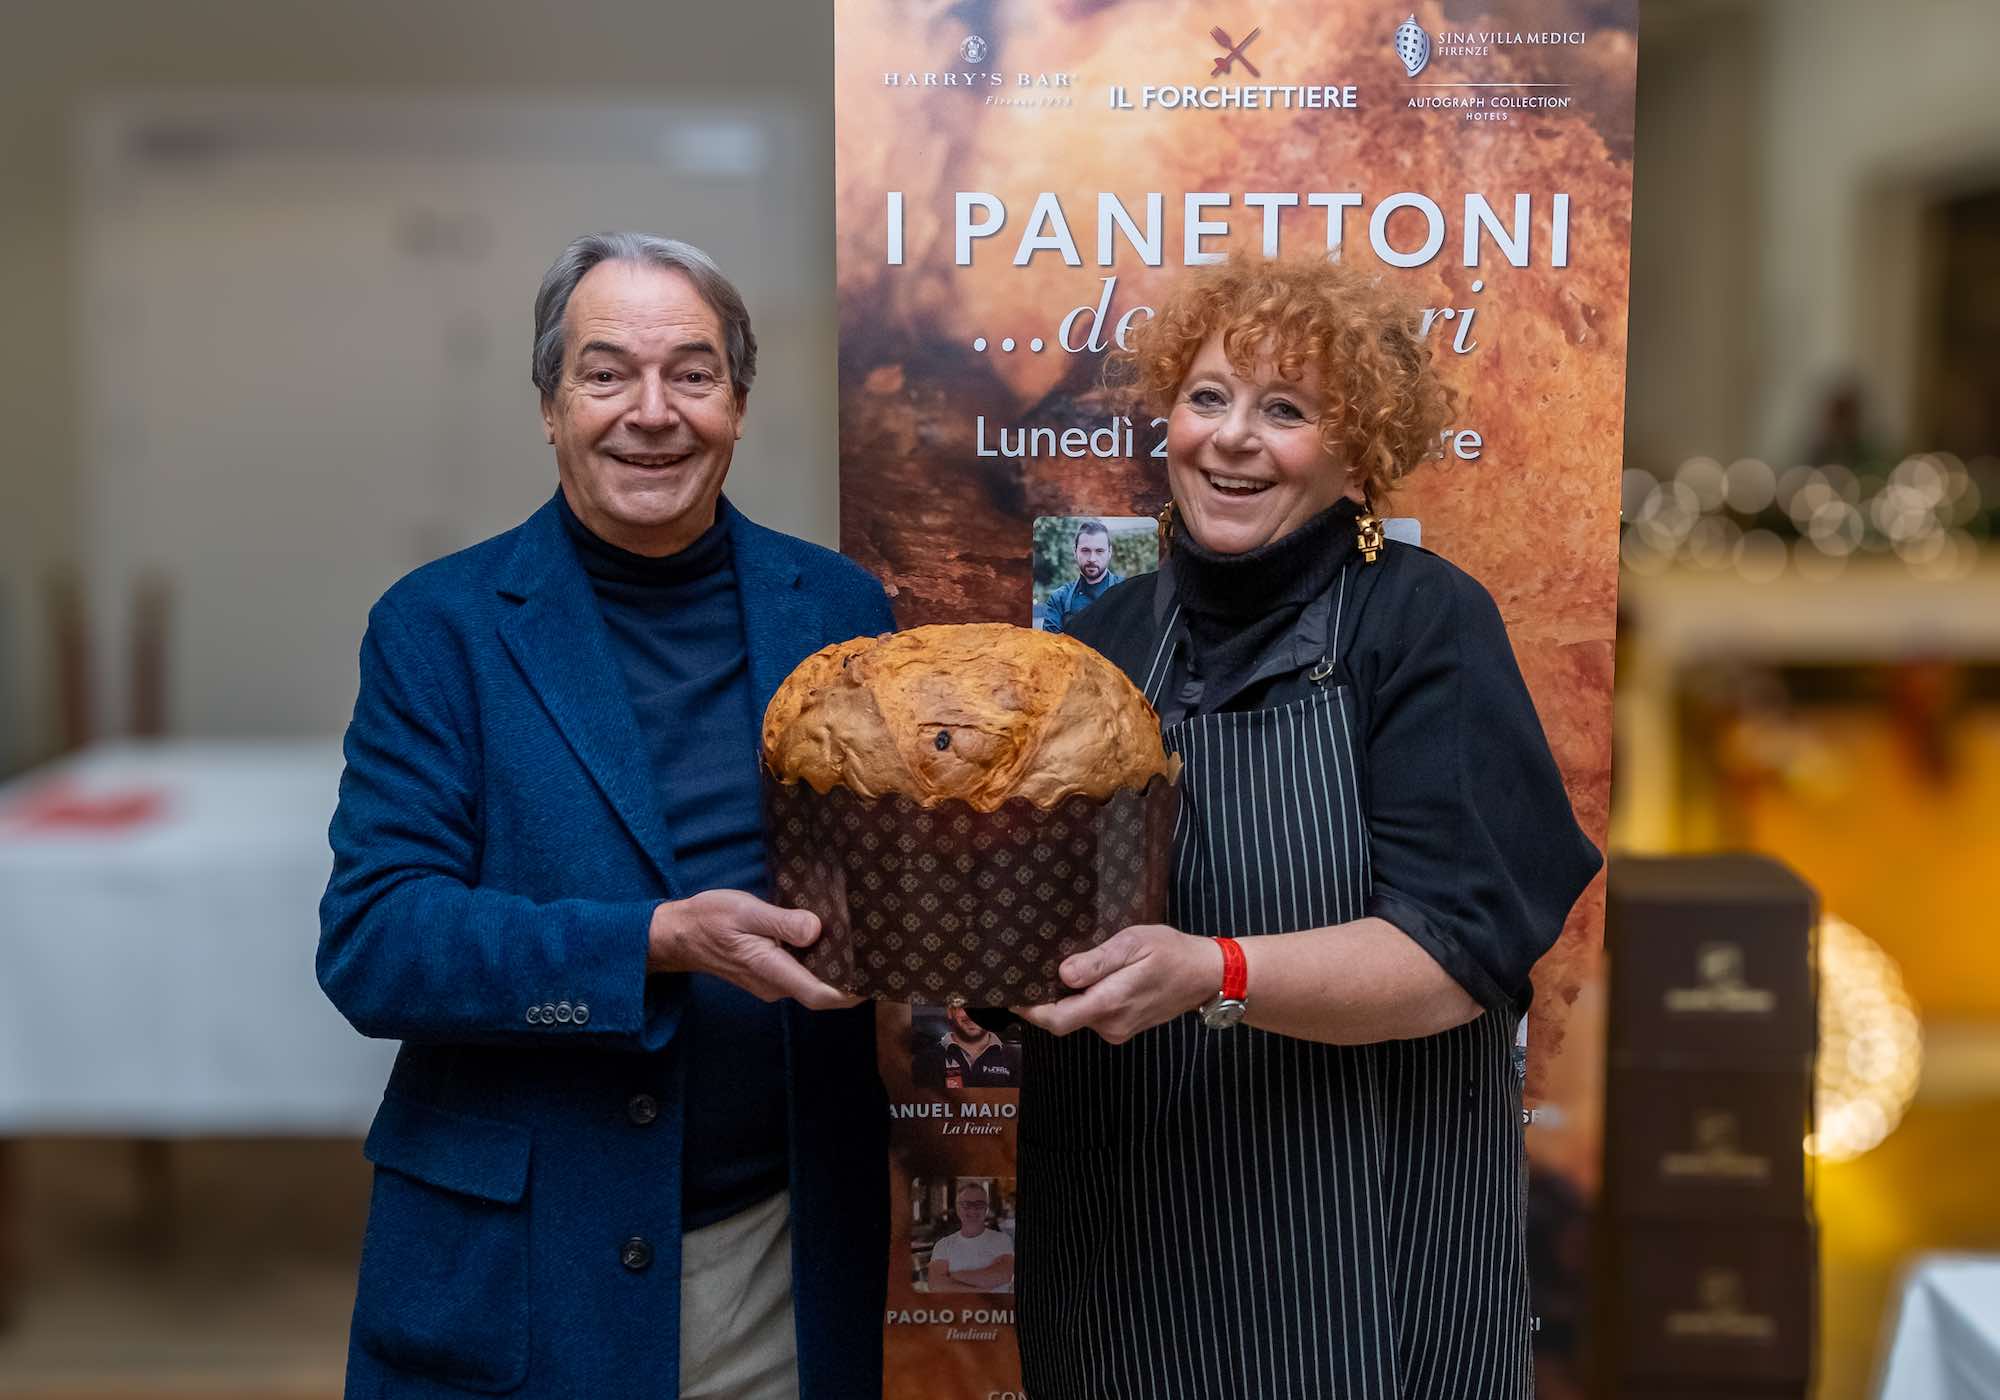 Luisanna Messeri all'evento i "Panettoni.. degli altri" organizzata da Il Forchettiere